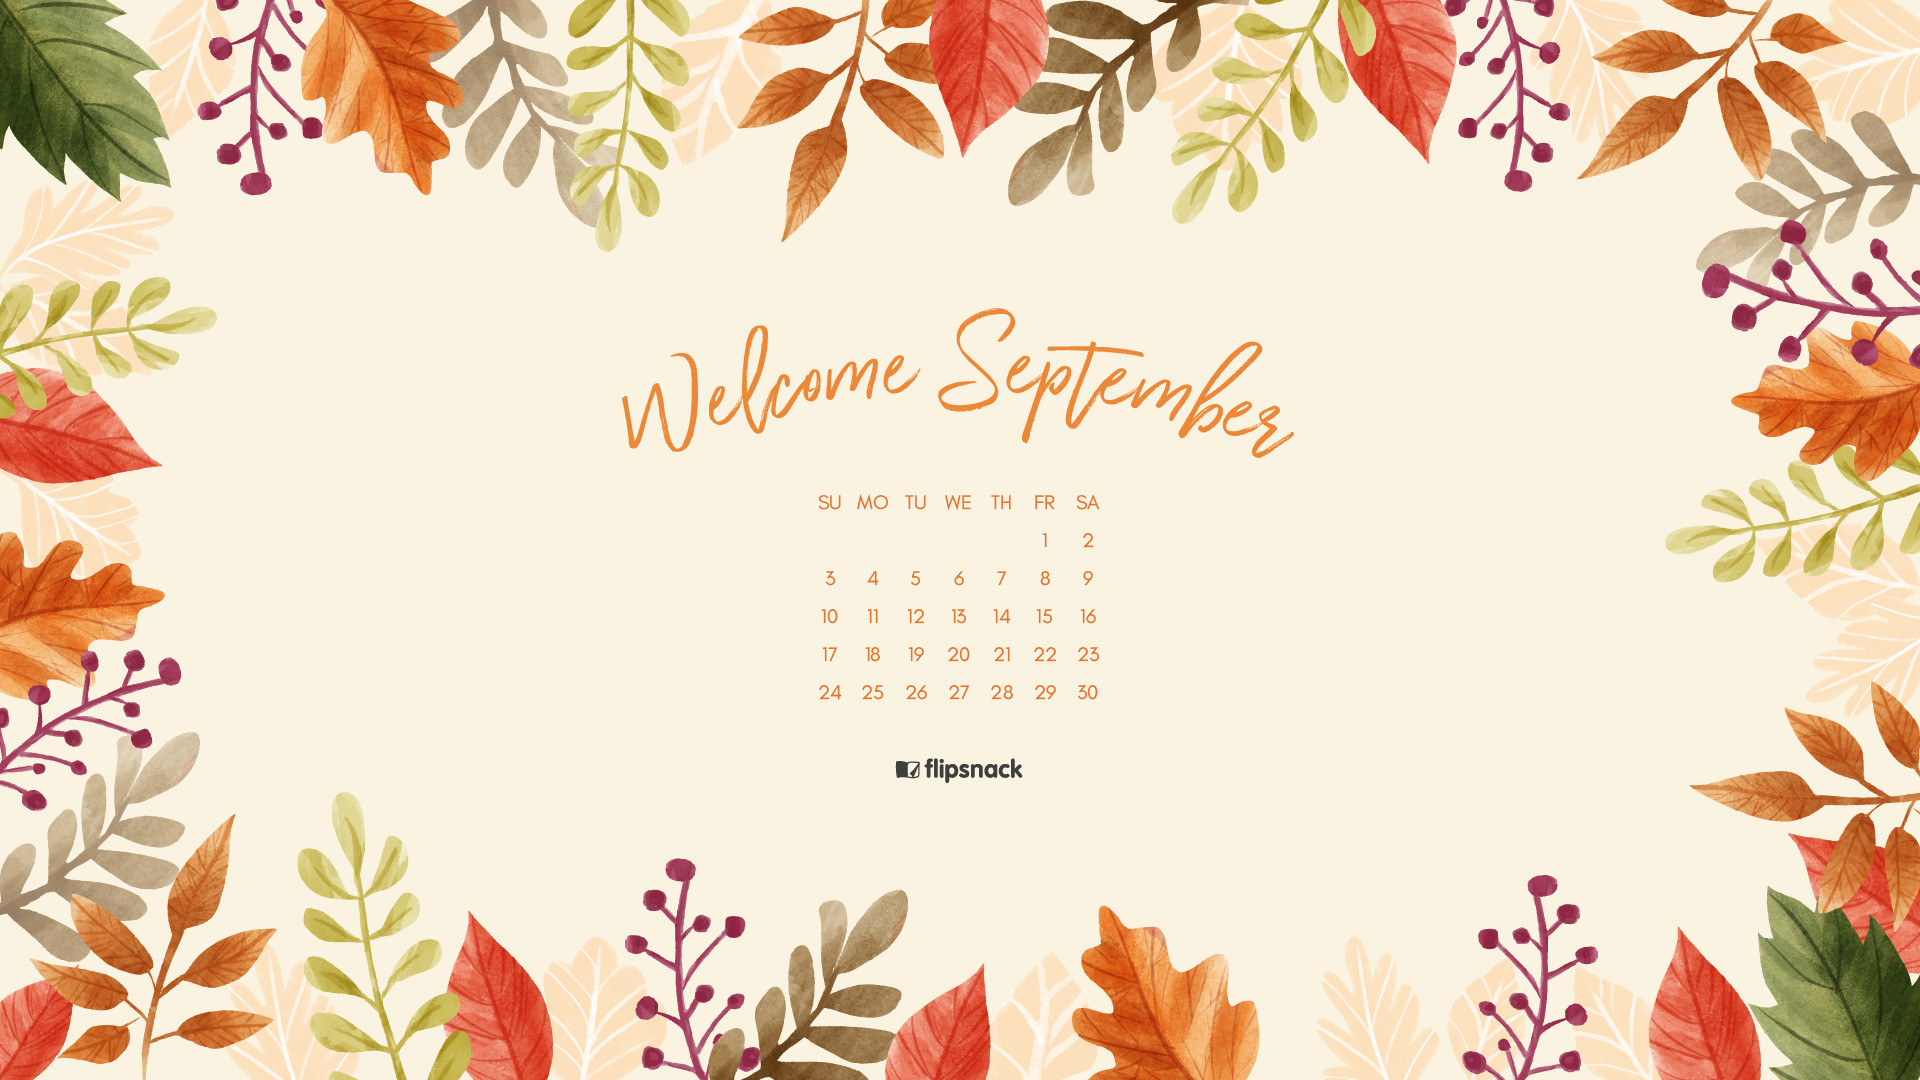 Desktop Wallpapers Calendar September 2018 ·① WallpaperTag